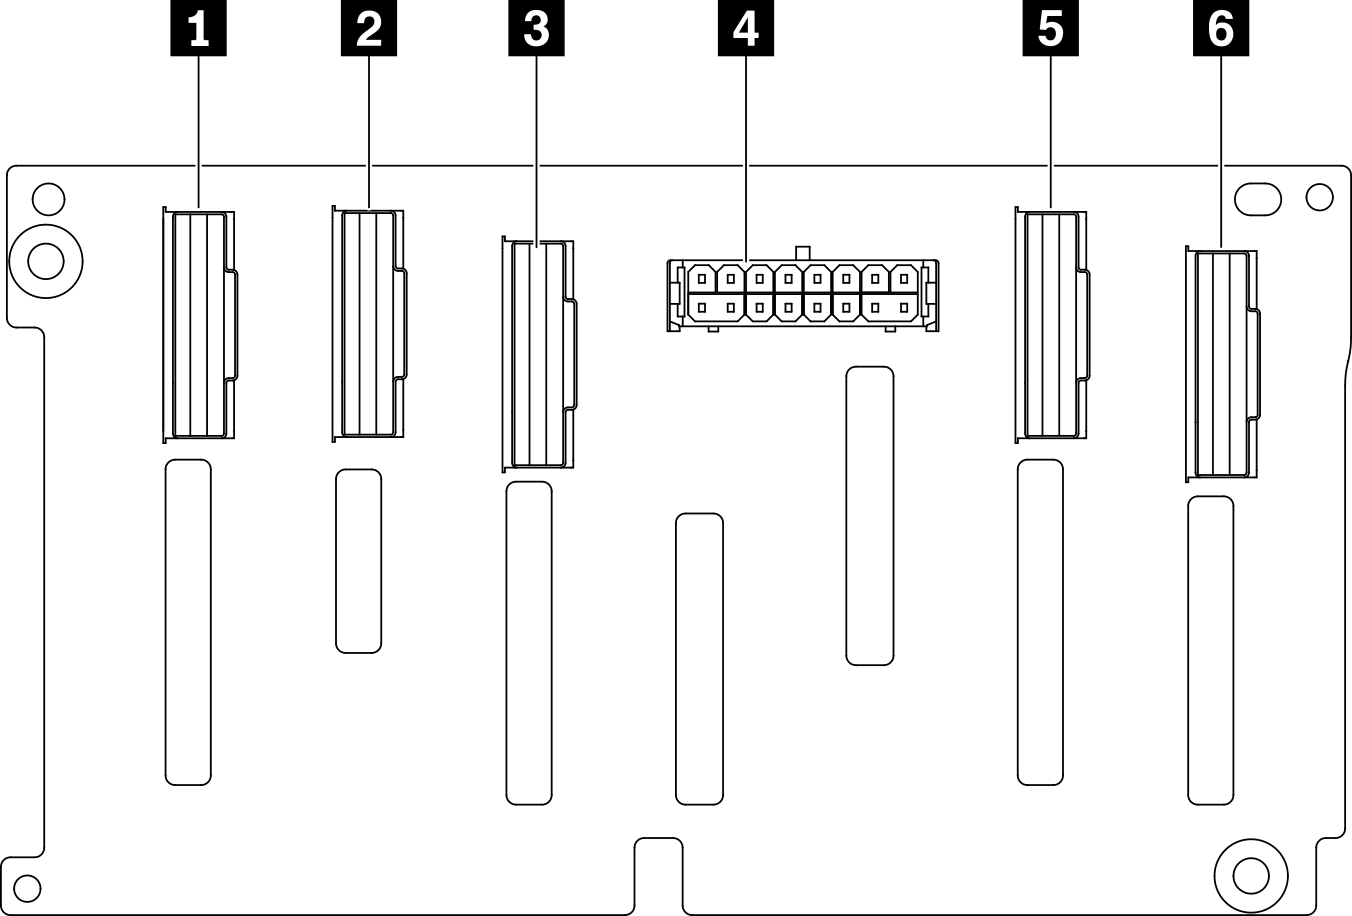 2.5-inch SAS/SATA/NVMe and NVMe 8-bay backplane connectors